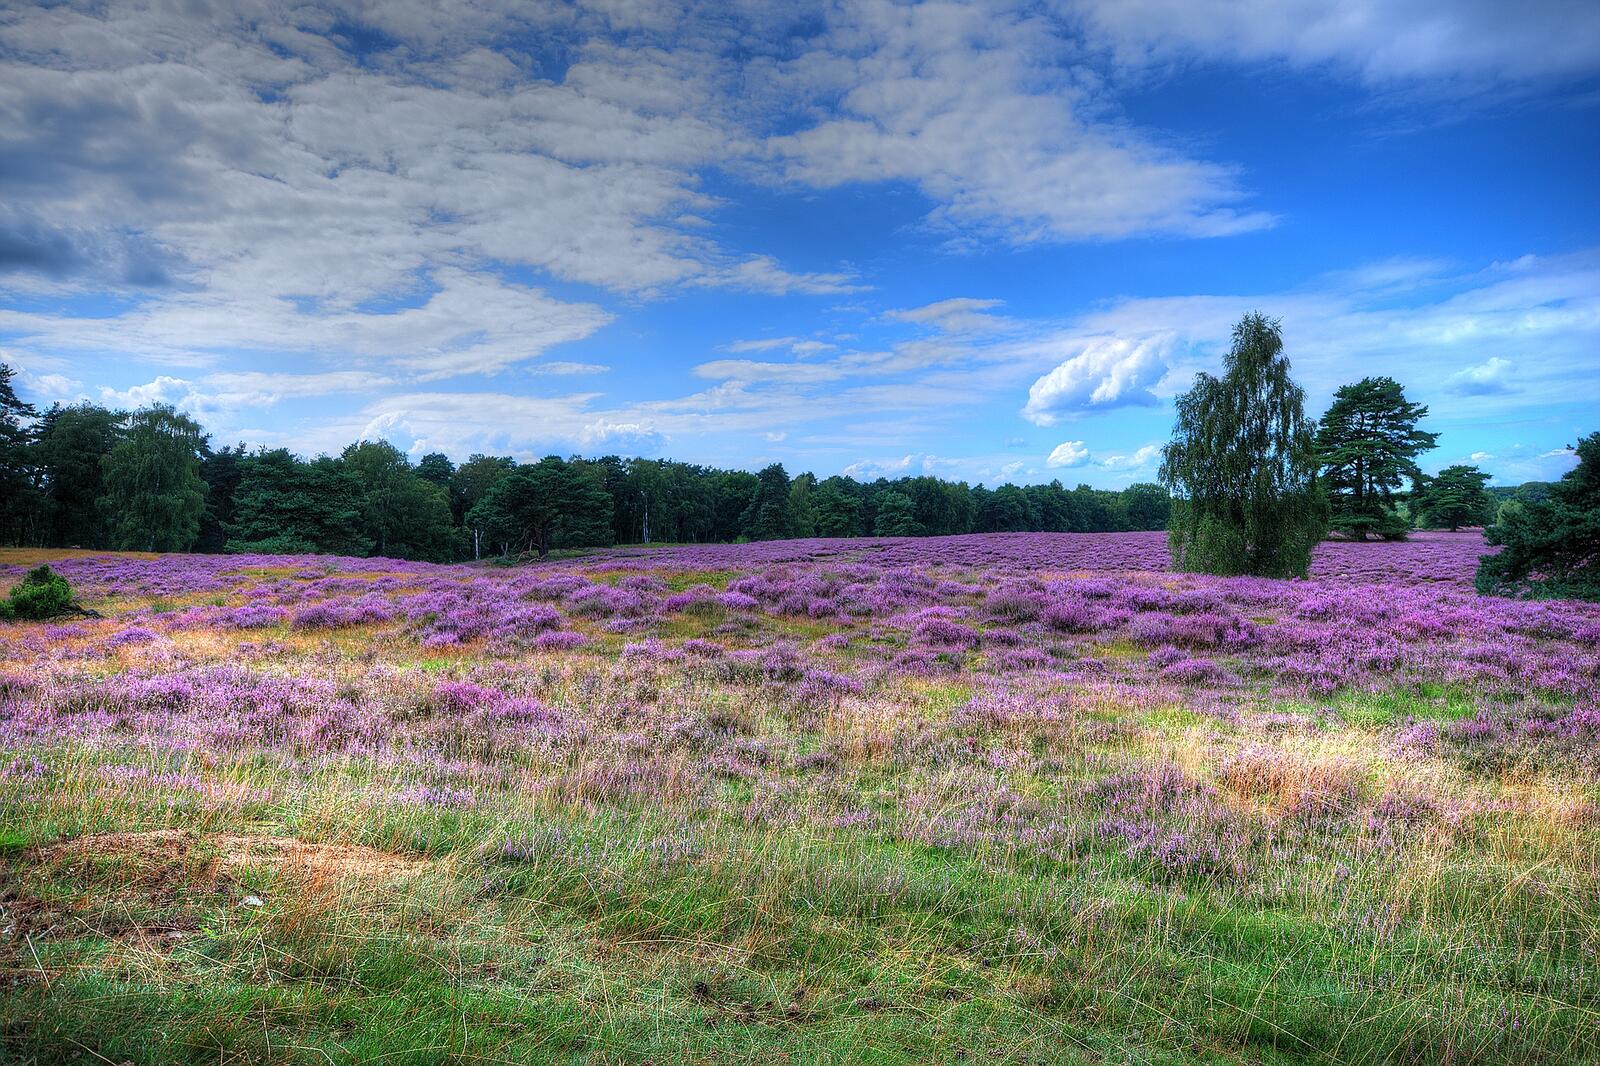 Wallpapers nature landscapes lavender on the desktop